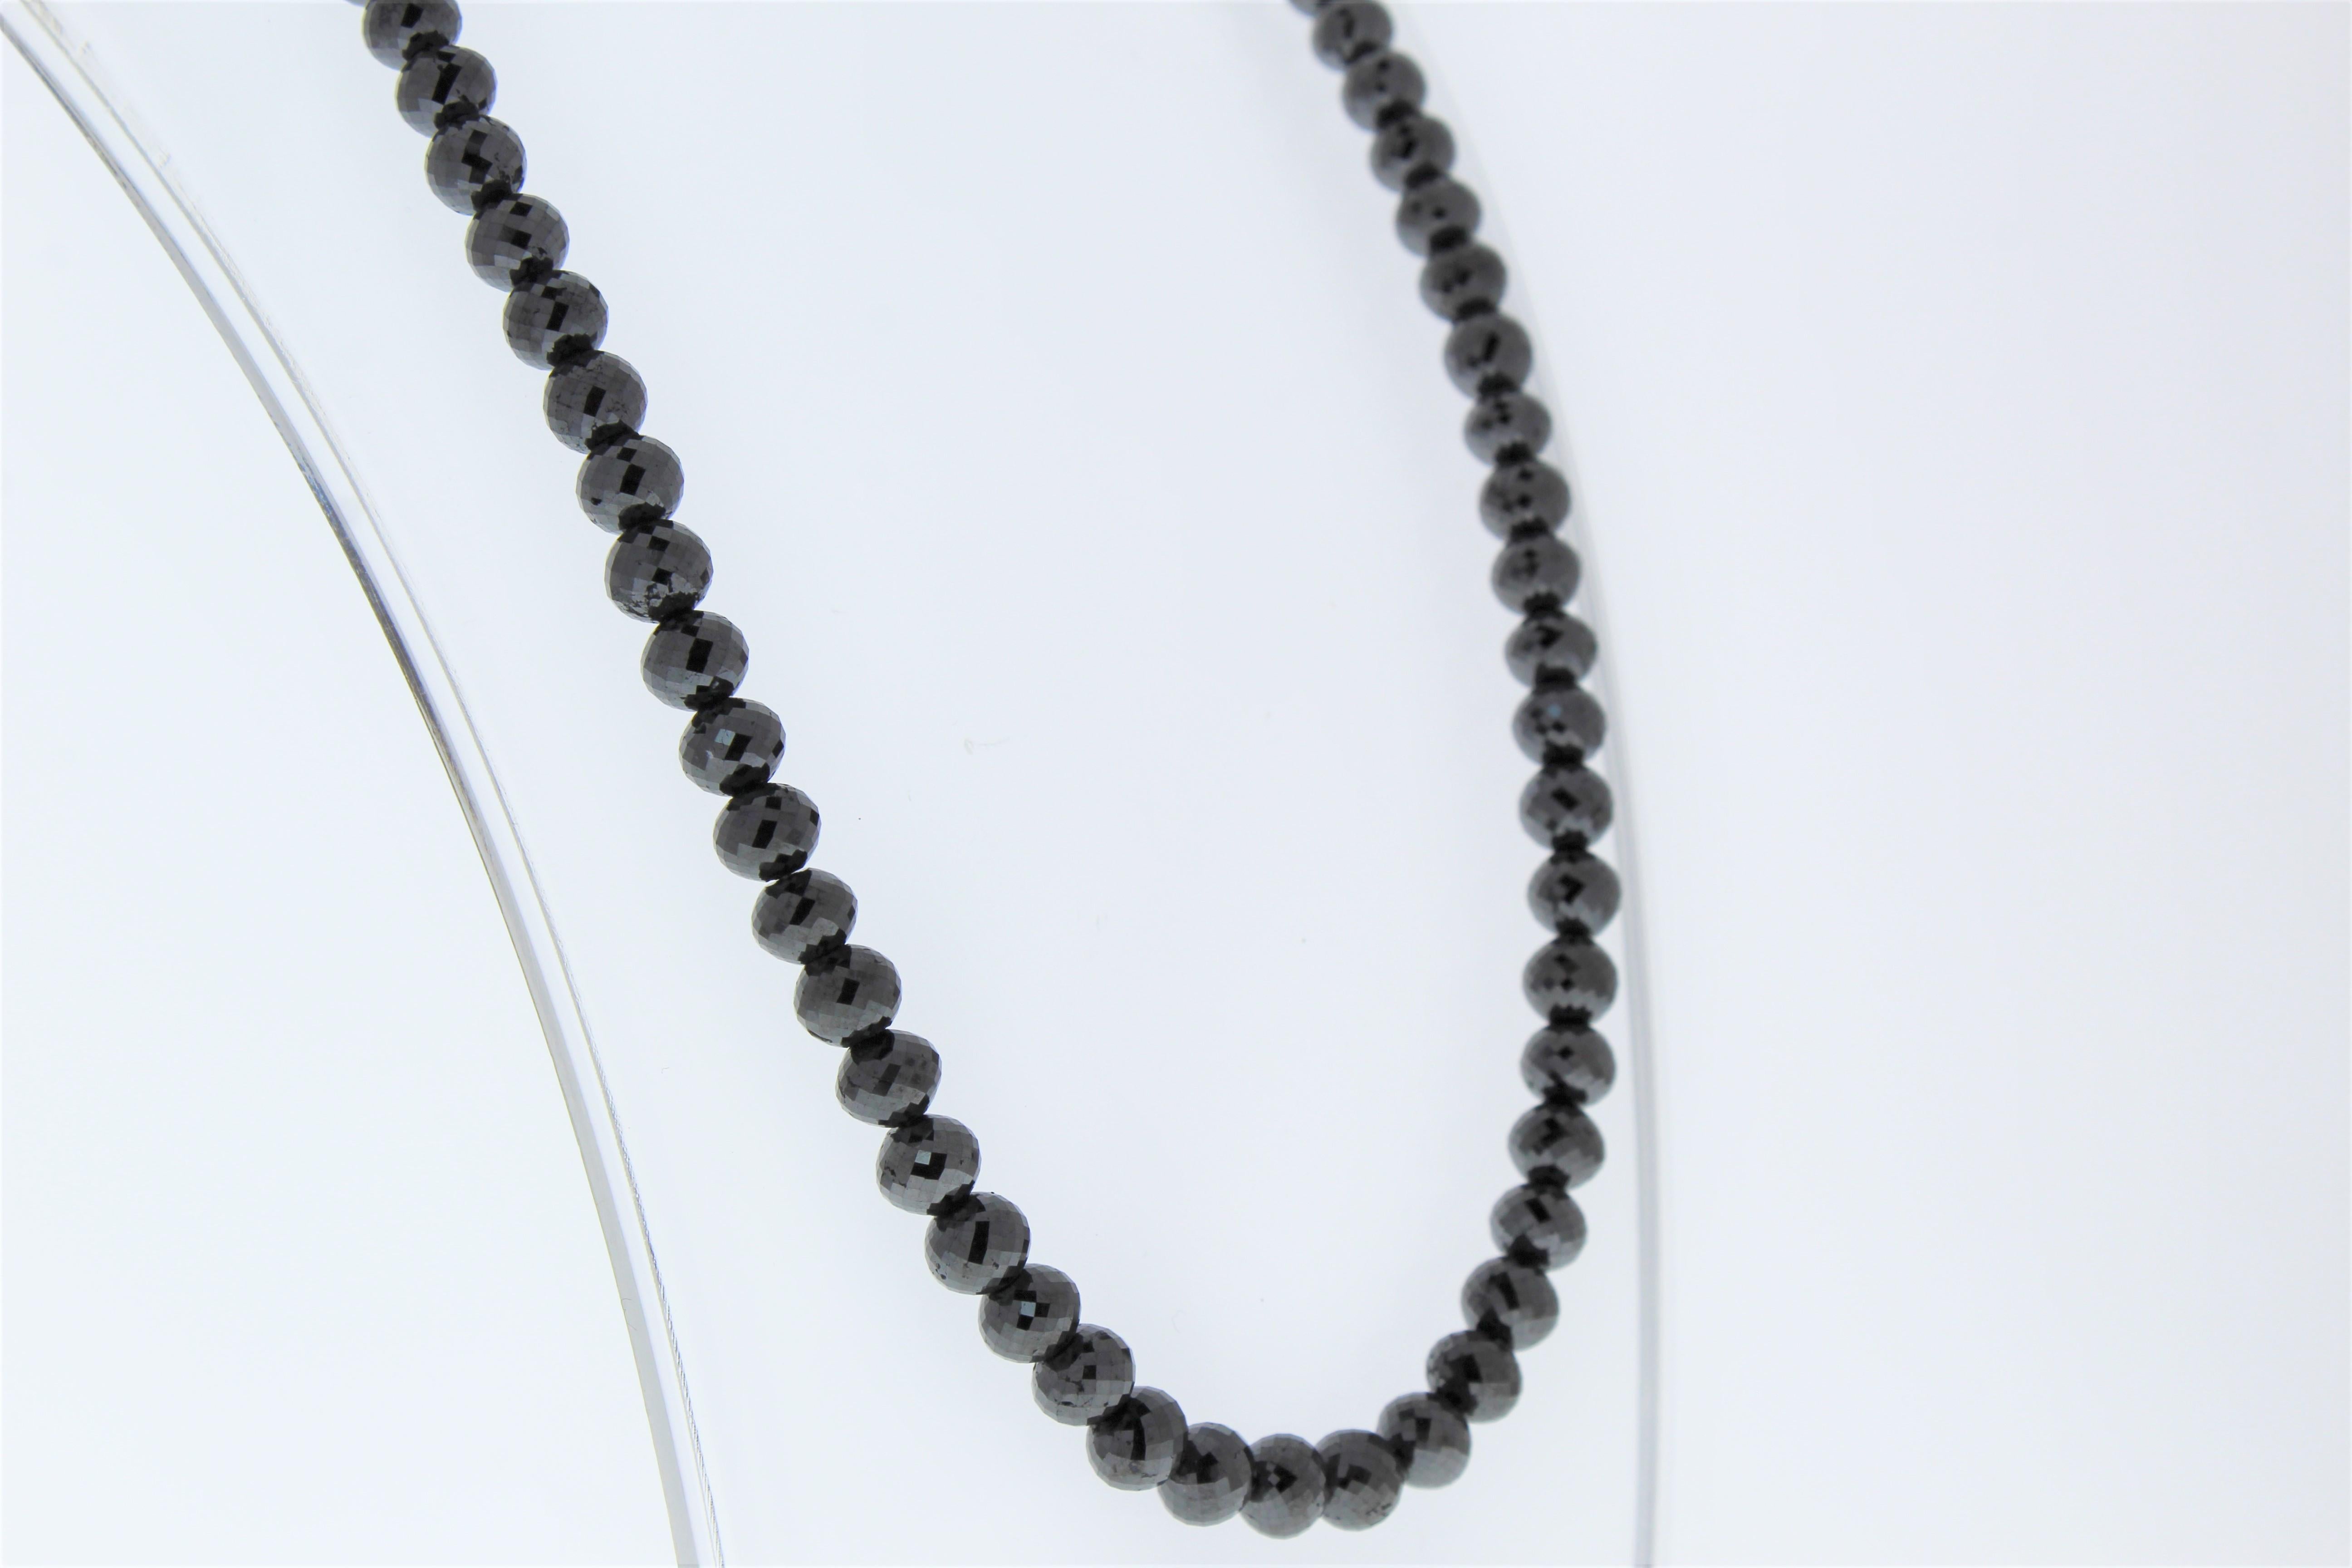 Ce collier est une chaîne spectaculaire de 81 diamants noirs briolettes à facettes totalisant 159,92 carats. De conception mince et parfait pour être superposé à d'autres colliers et chaînes, ce collier de diamants noirs est sûr de se faire